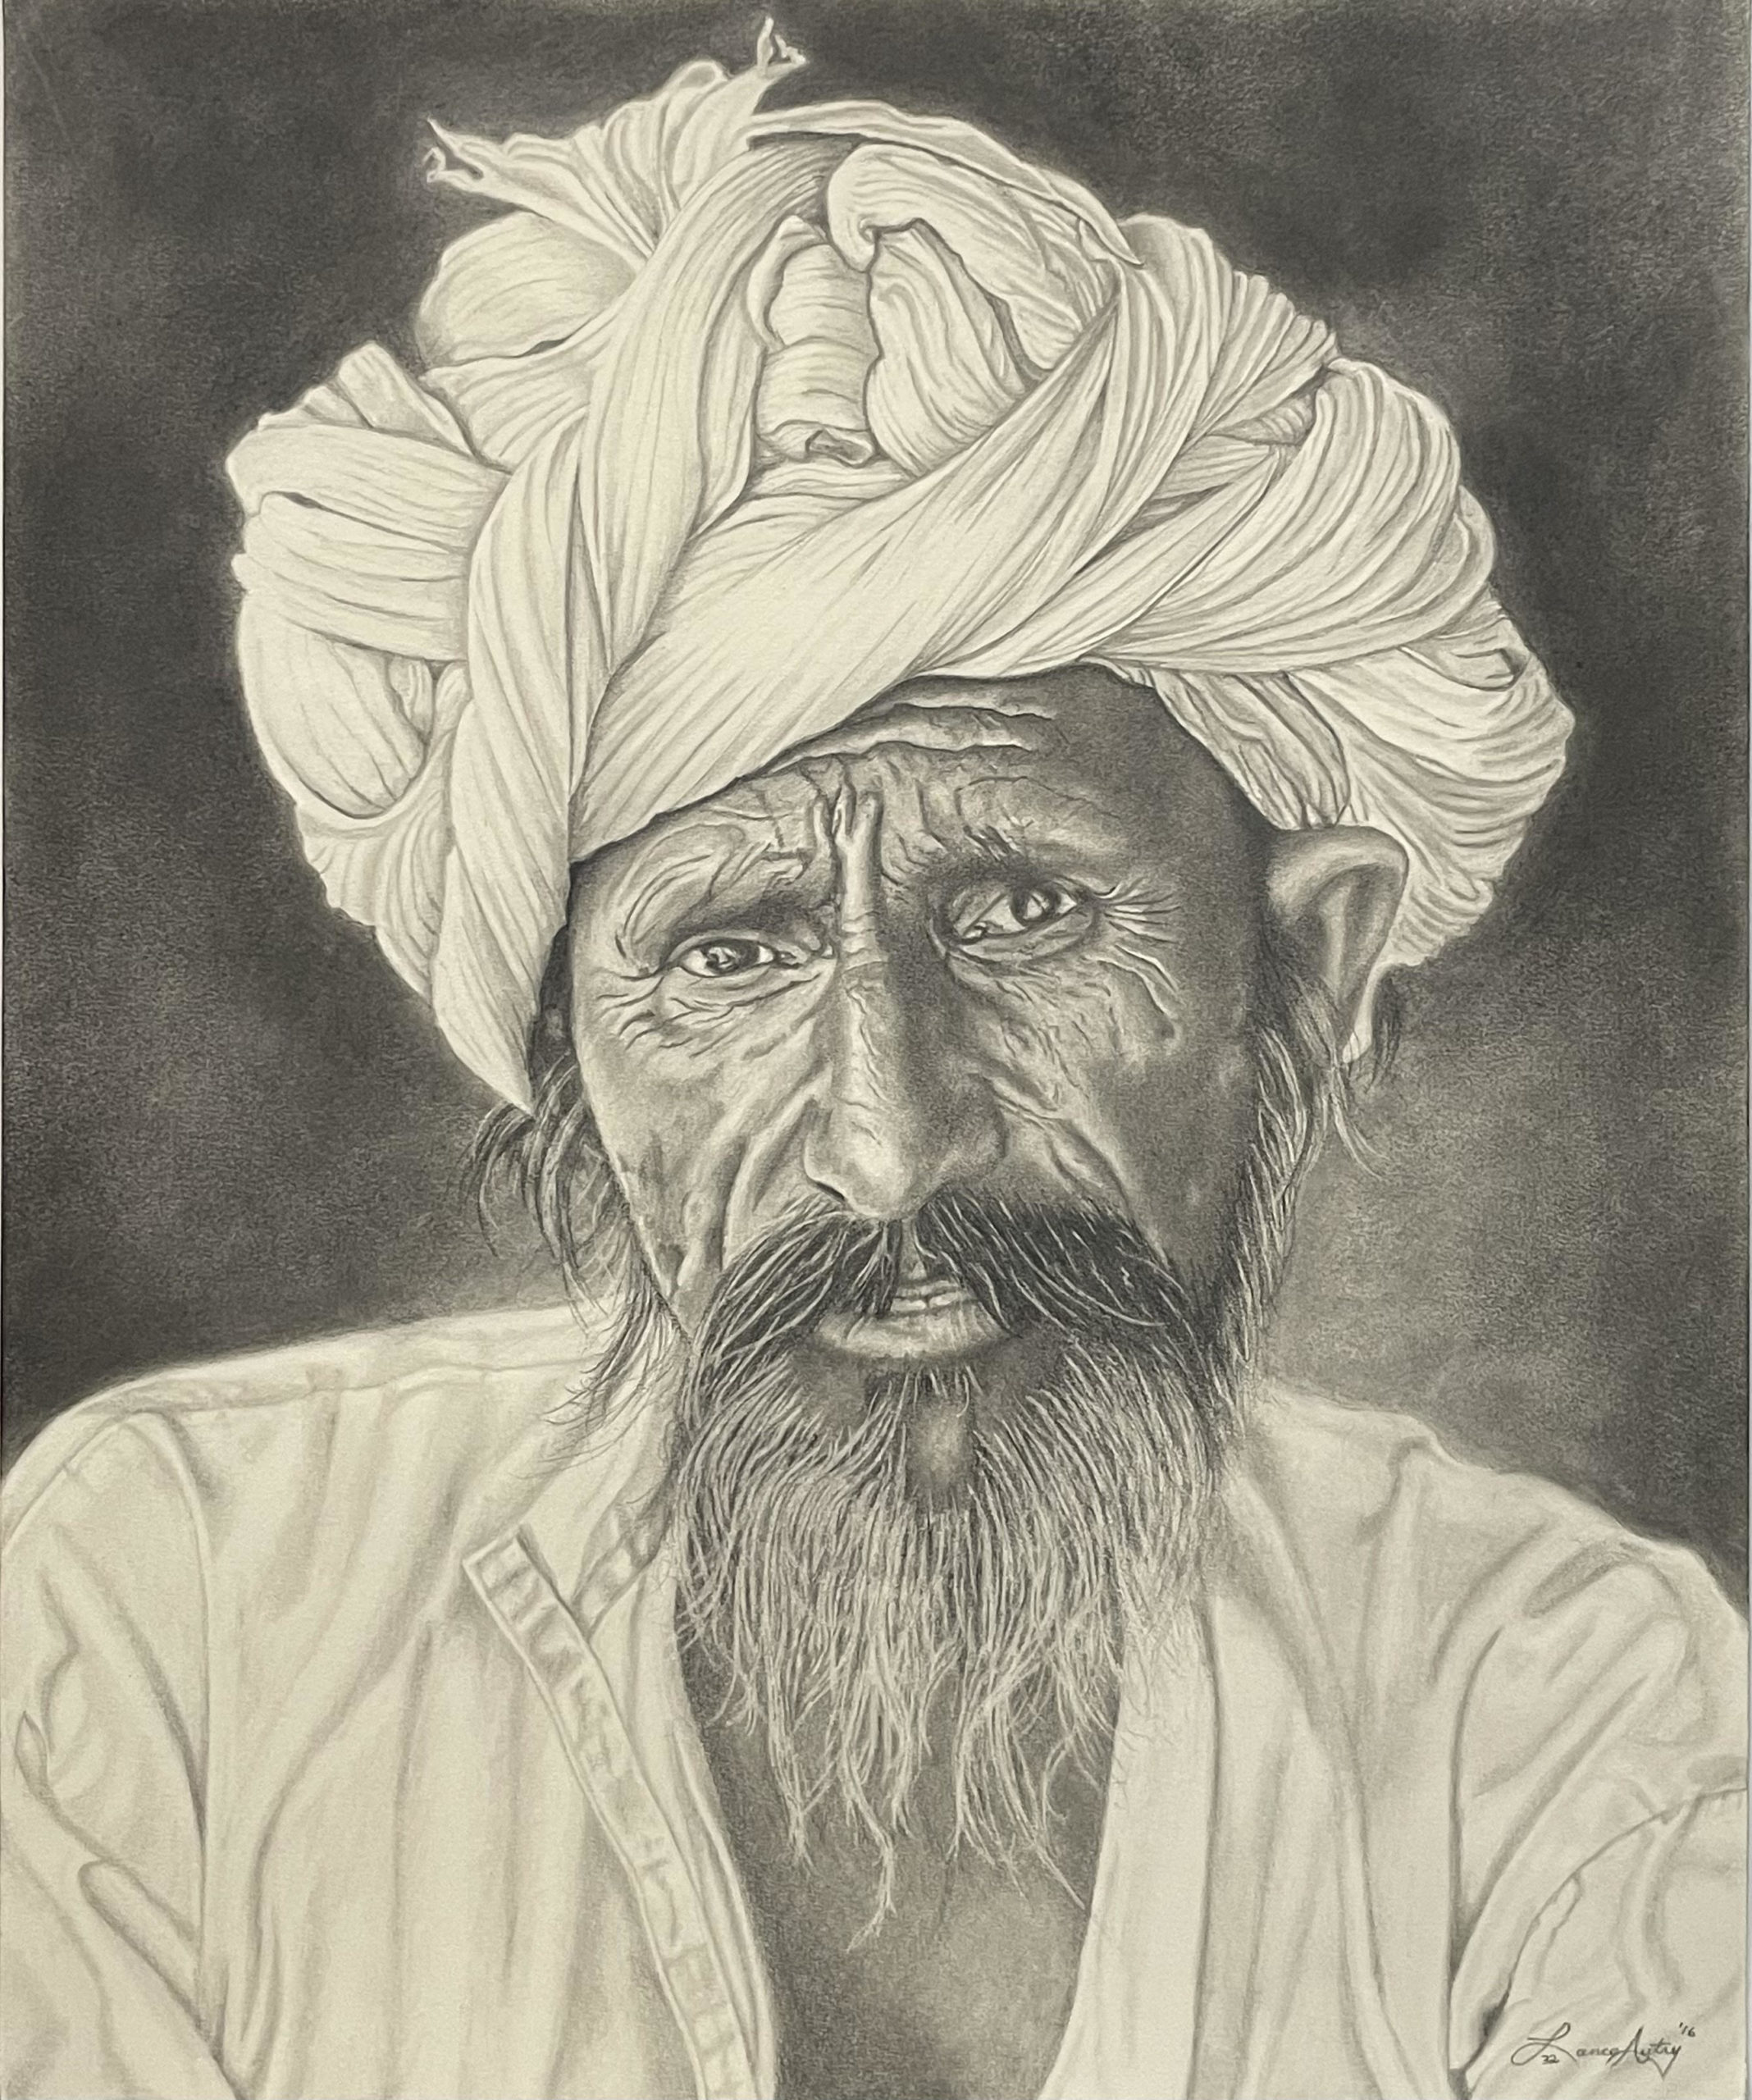 Man in Turban